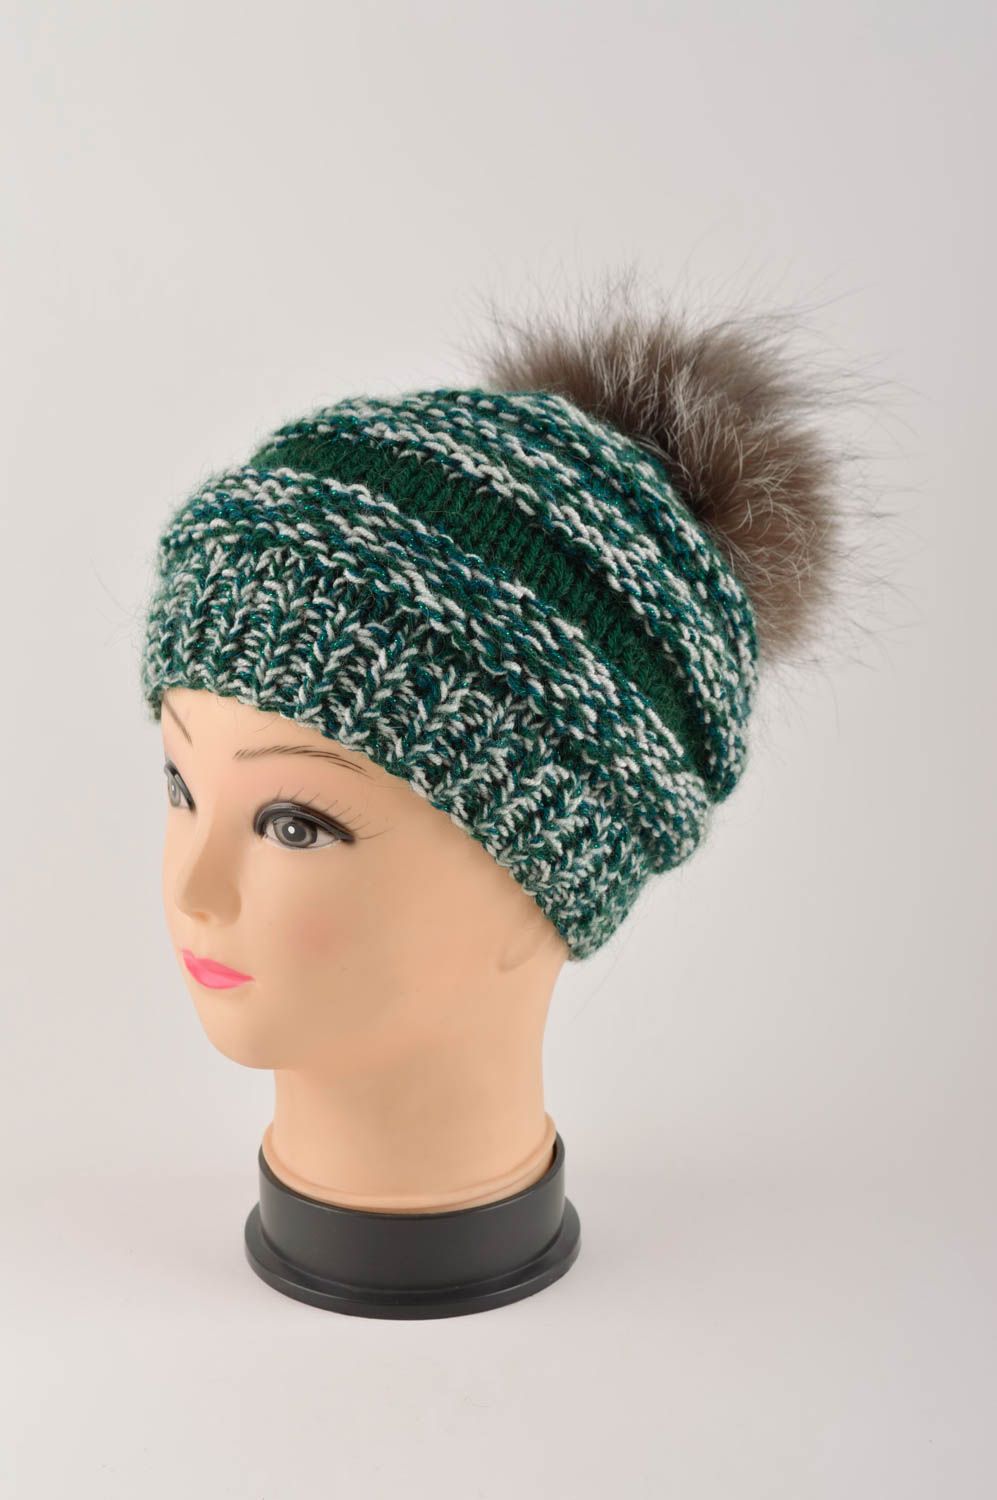 Handmade headwear designer hat for baby unusual gift woolen hat warm hat photo 2